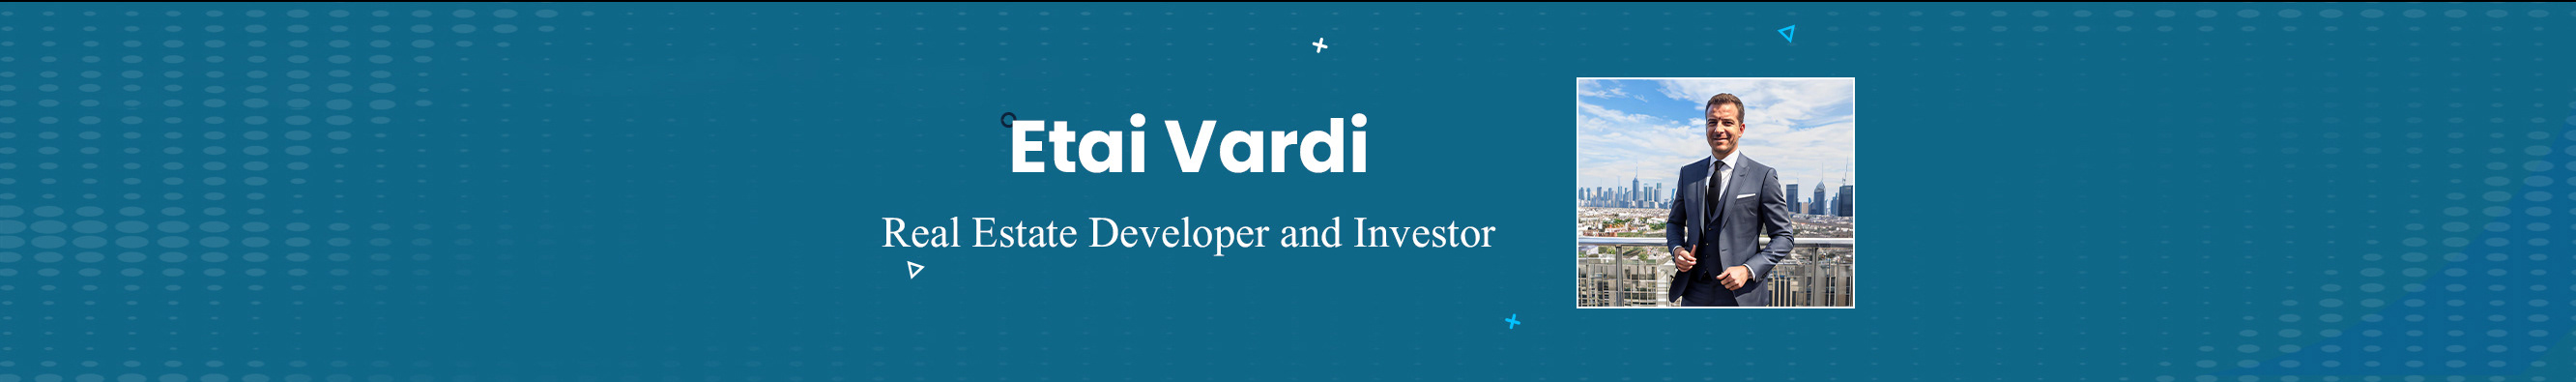 Profil-Banner von Etai Vardi